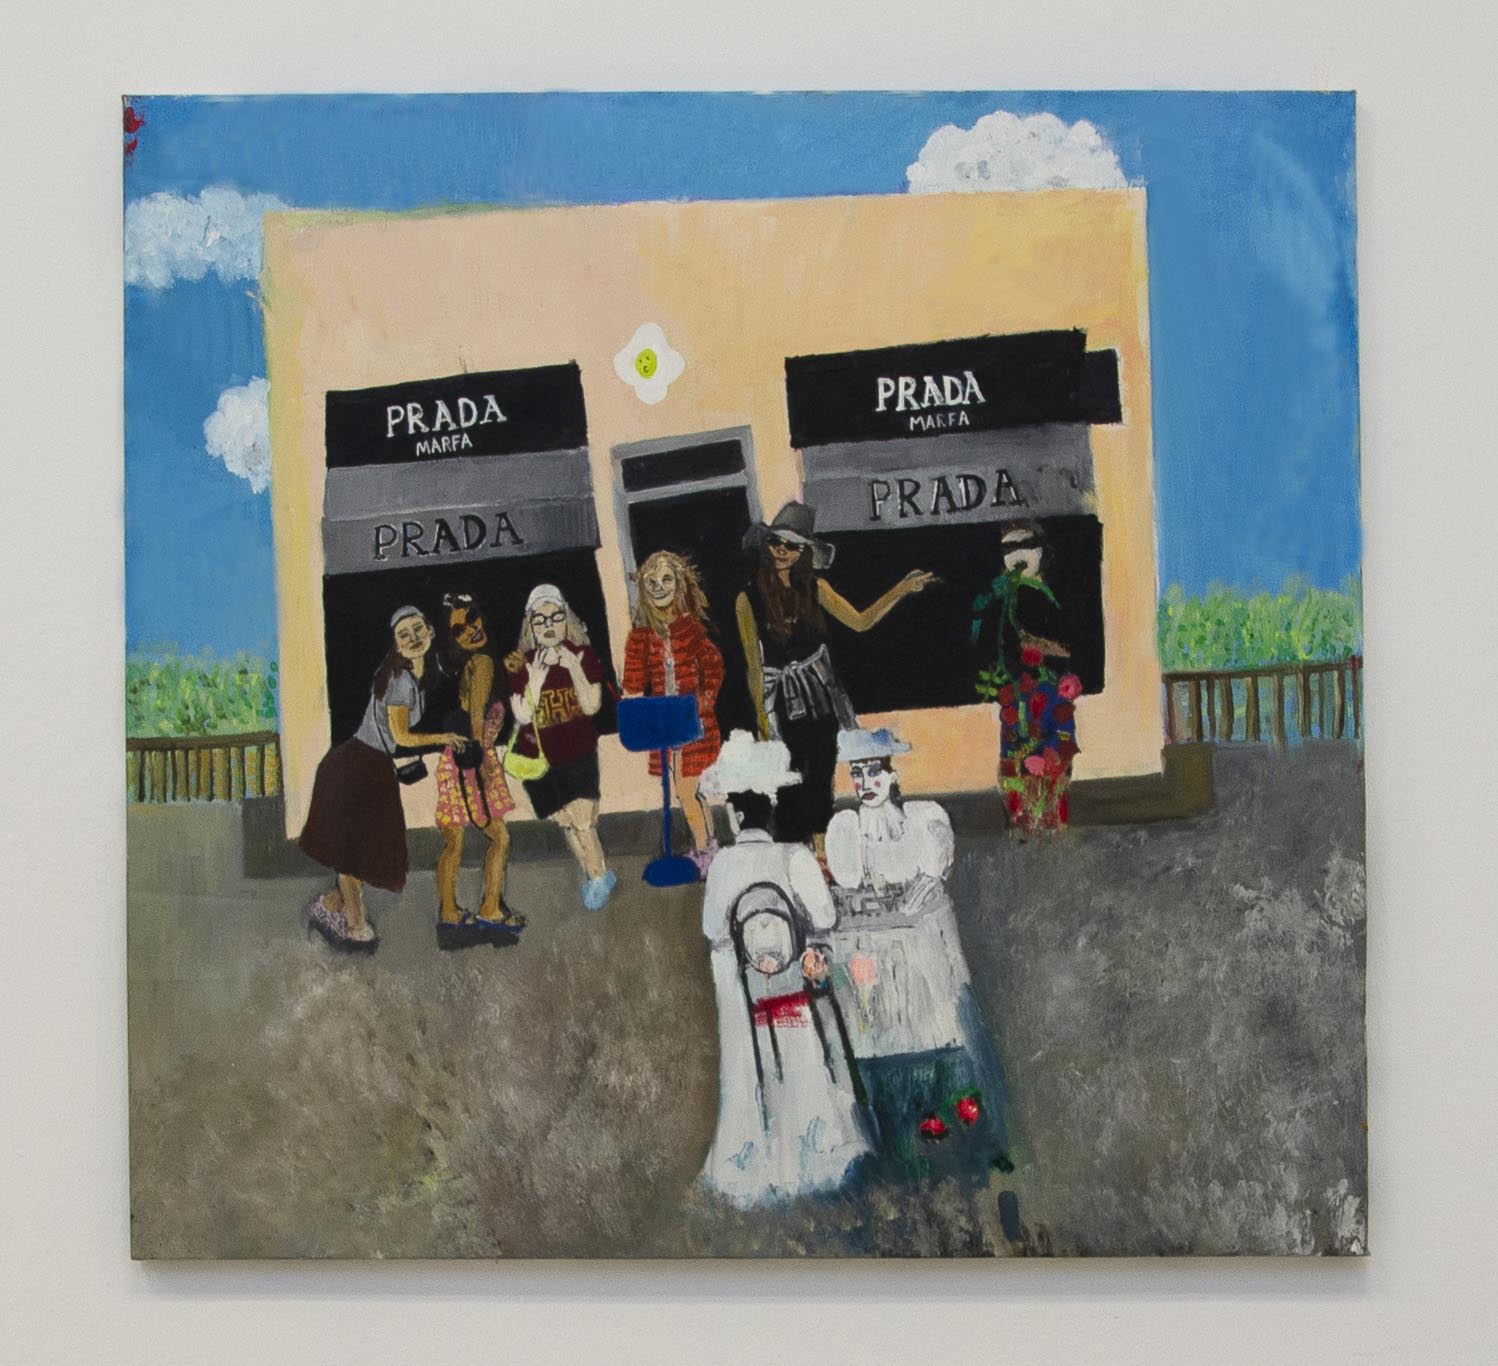 Prad, Marfa, Oil and Acrylics on canvas, 83x 87, 2019